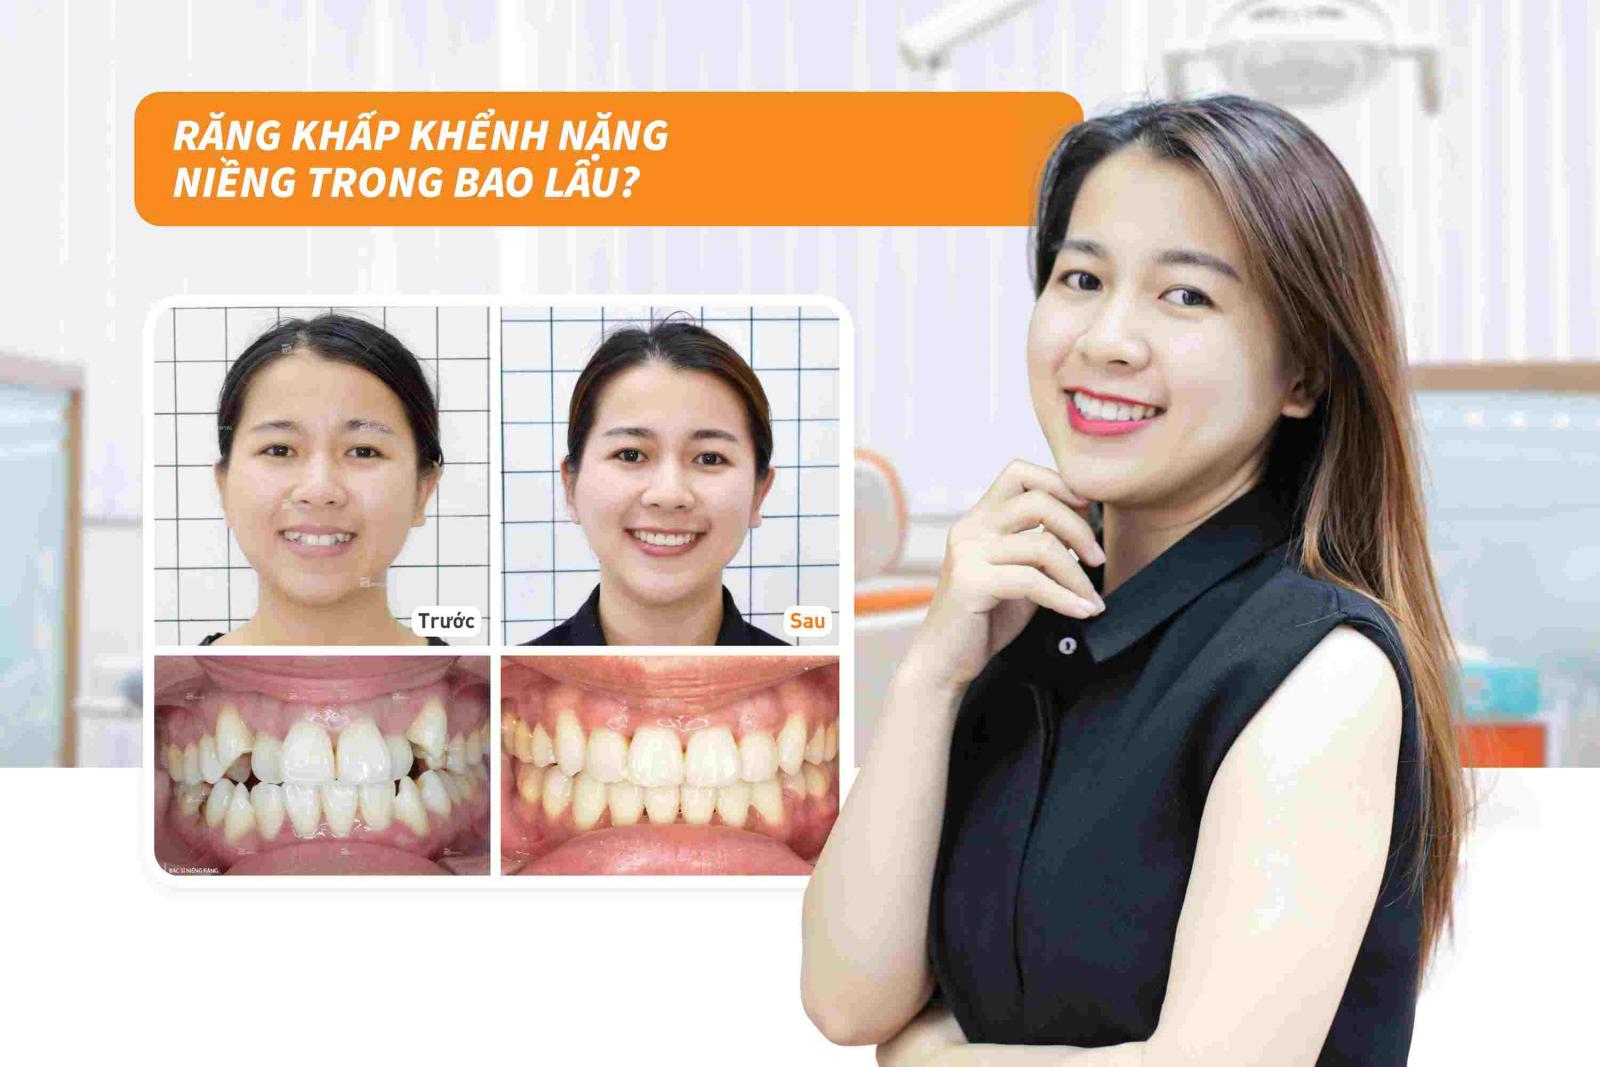 Niềng răng khấp khểnh nặng trong bao lâu?